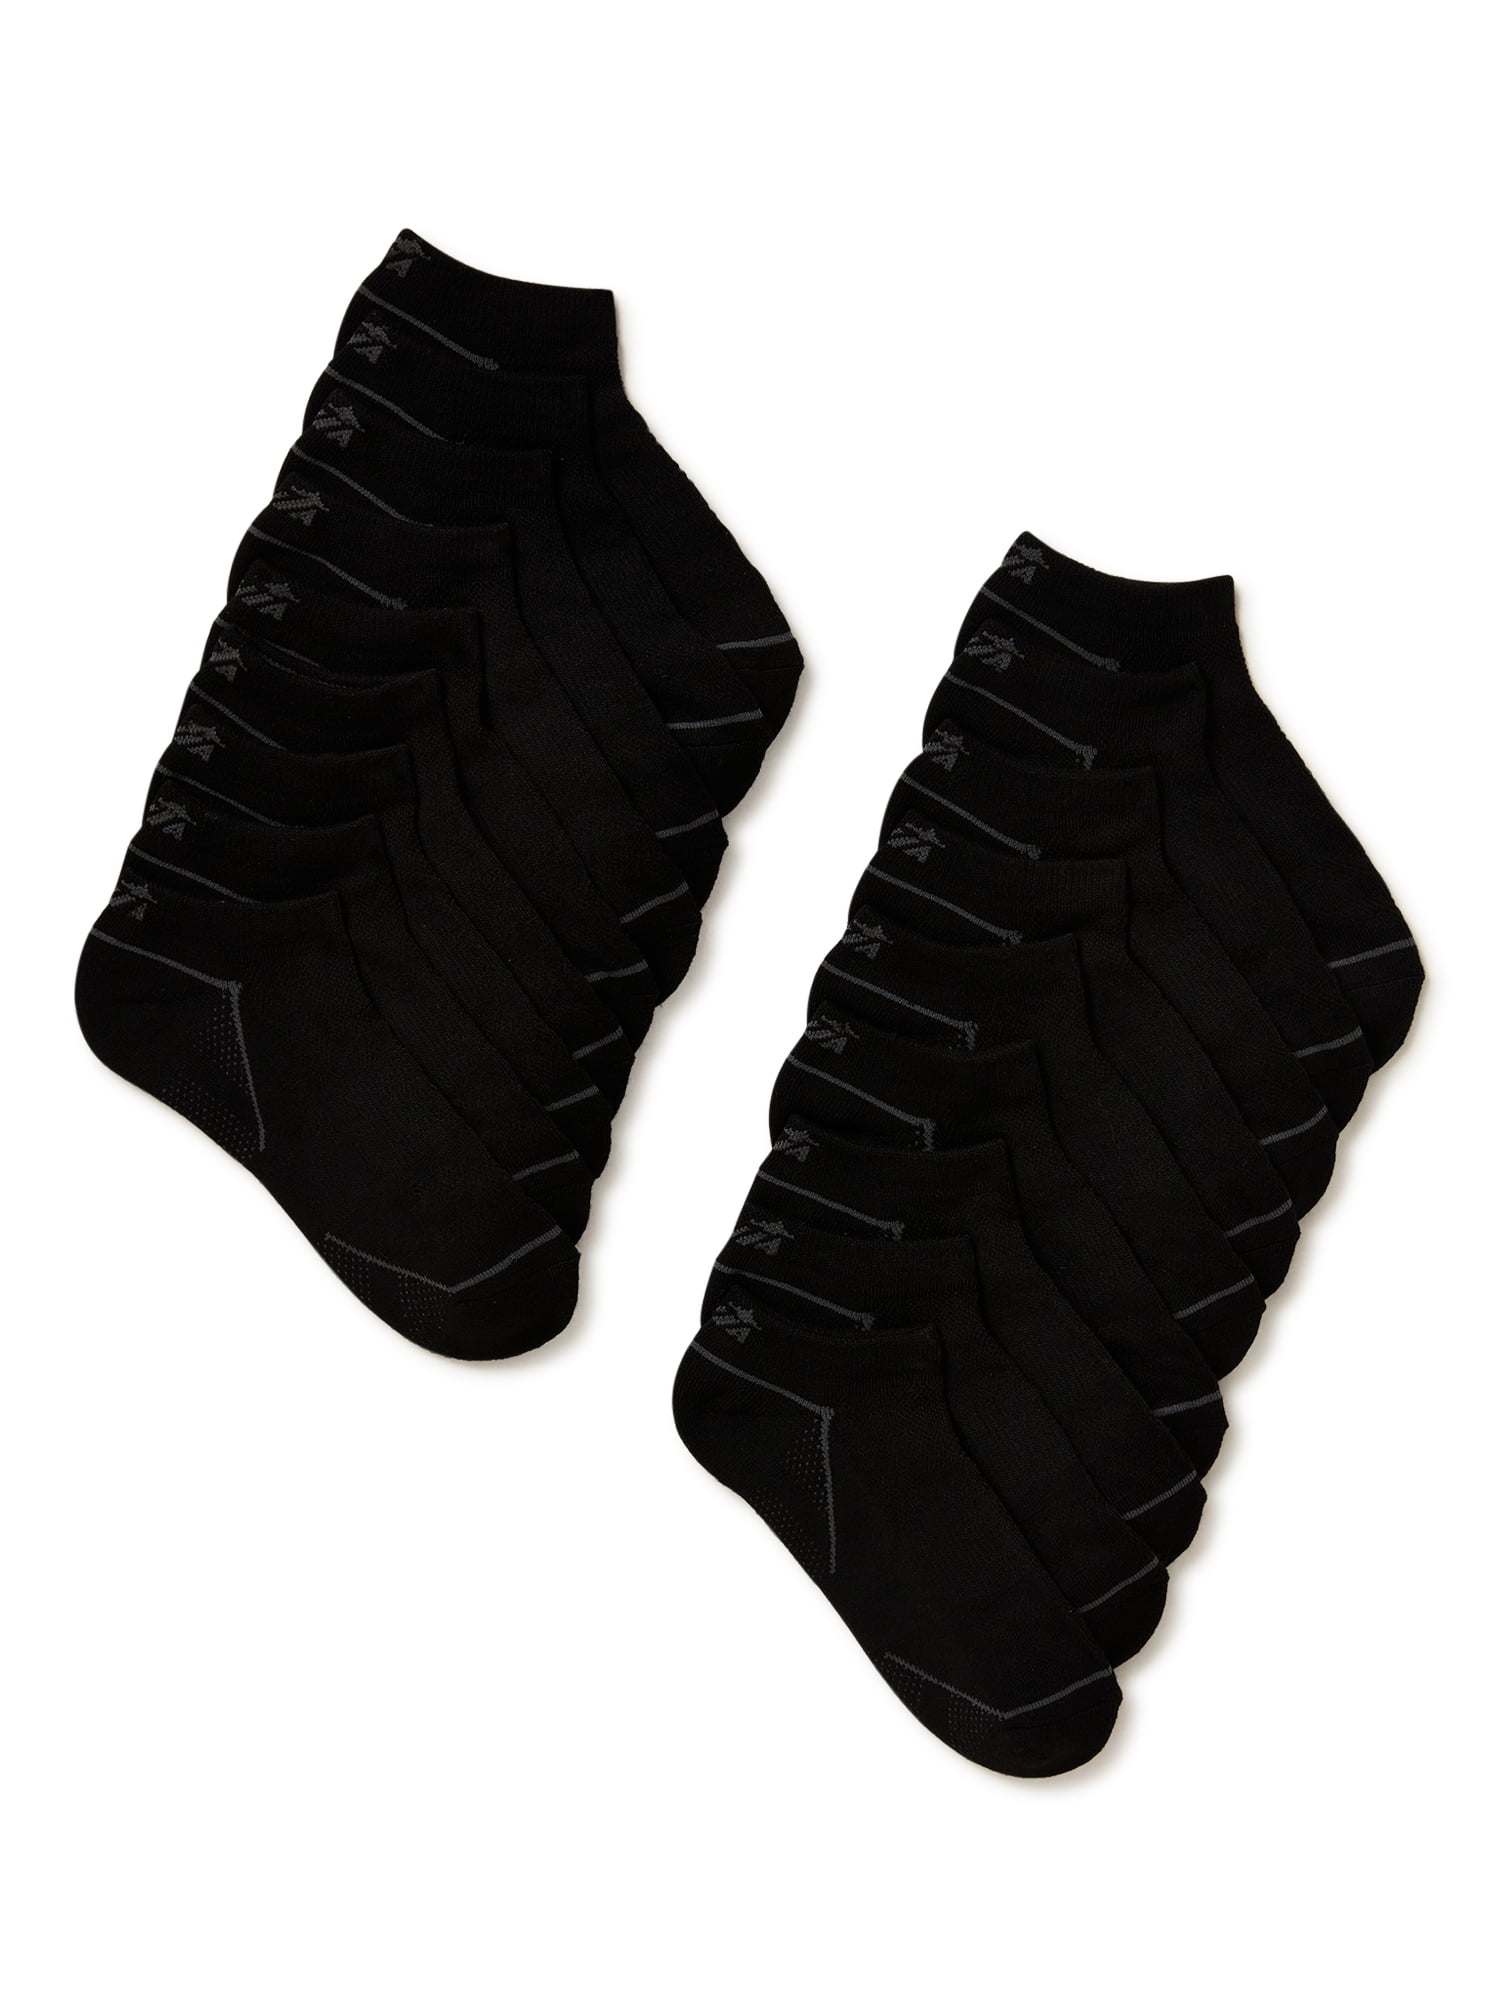 Avia Women's Pro-Tech Cushion No Show Socks, 18-Pack, Size 4-10 